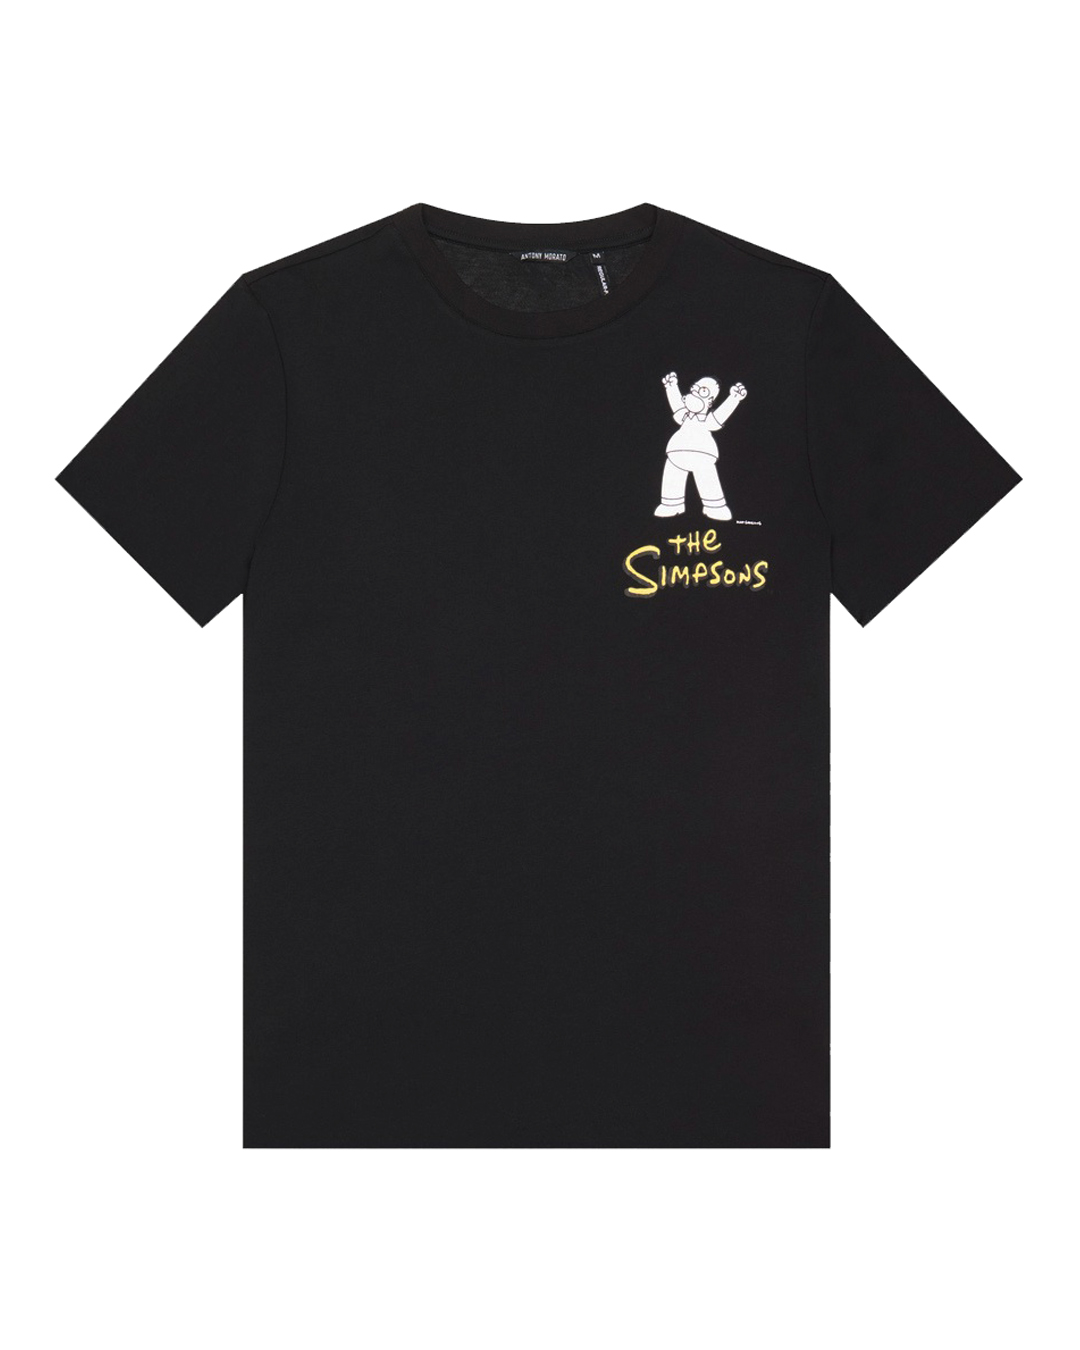 футболка Antony Morato MMKS02415-FA100240 черный+принт xl, размер xl, цвет черный+принт MMKS02415-FA100240 черный+принт xl - фото 1